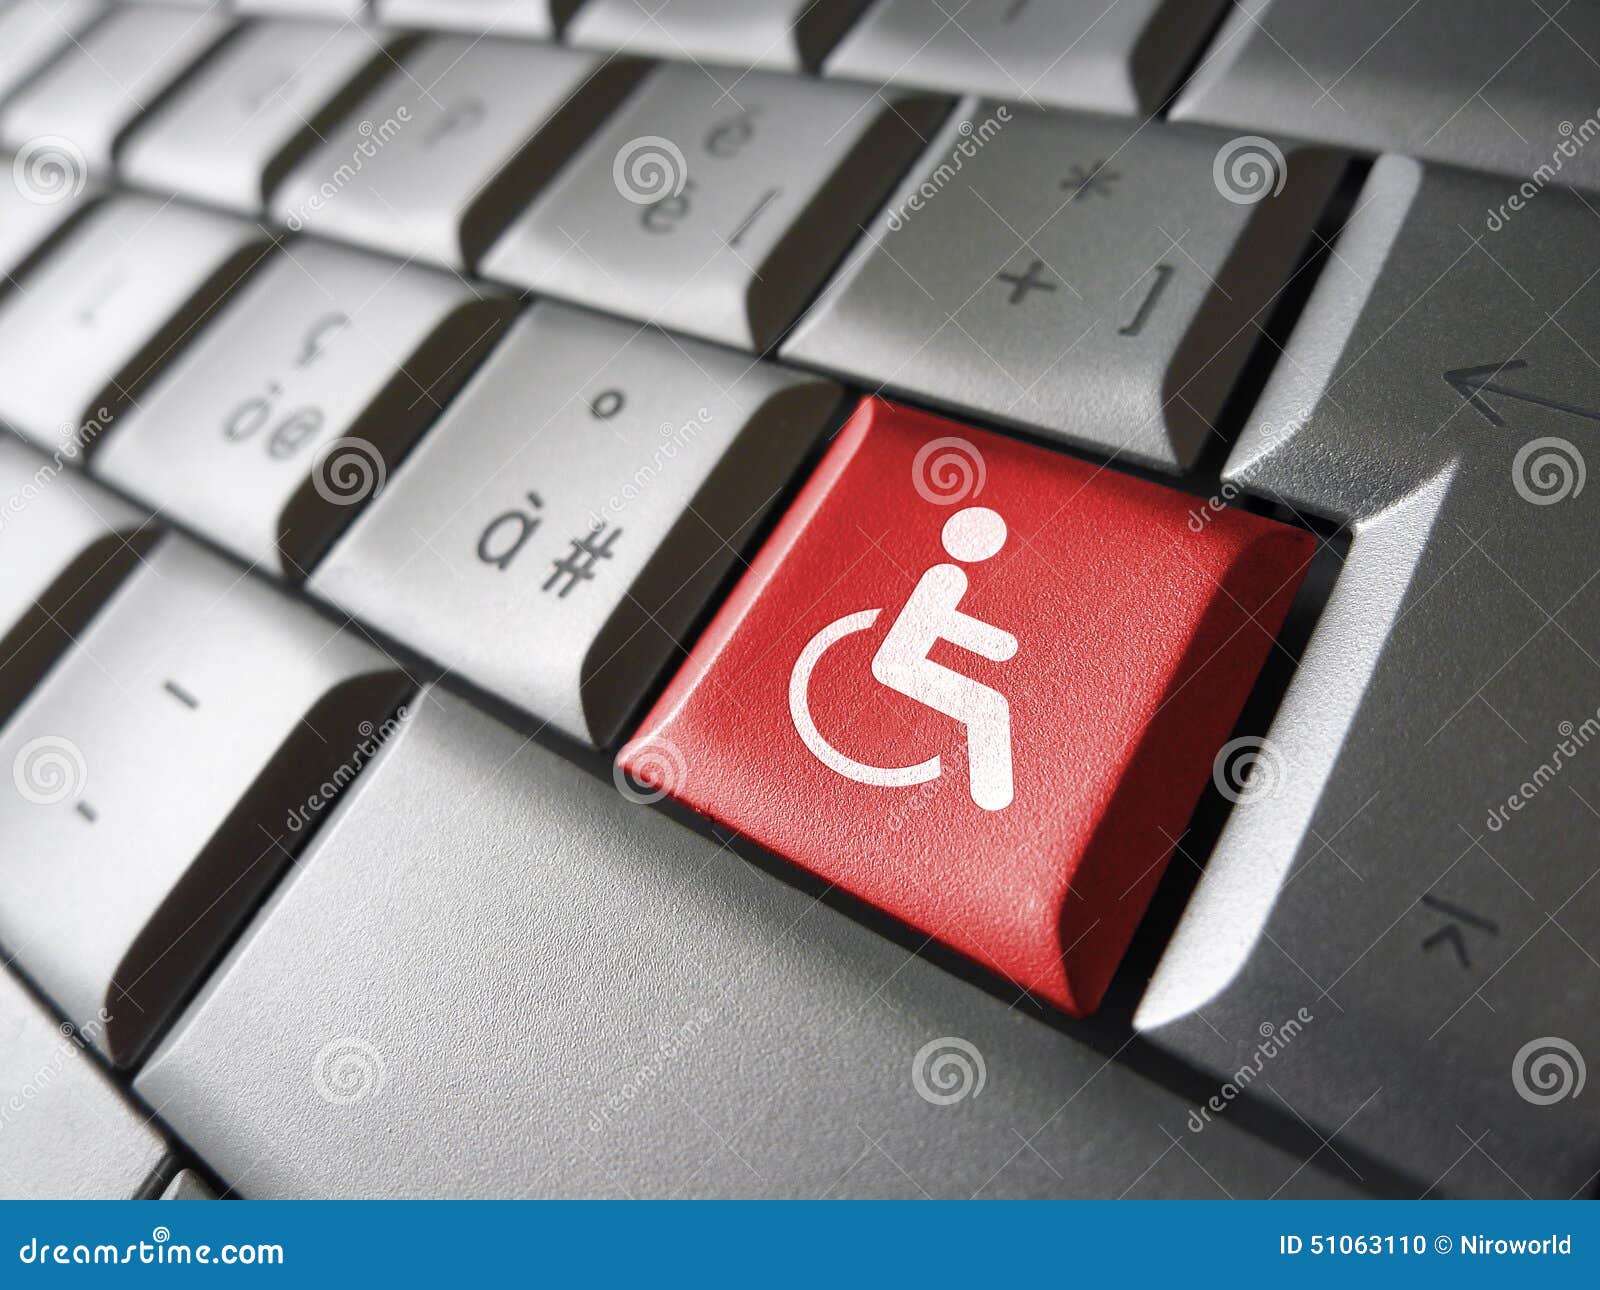 web accessibility icon 